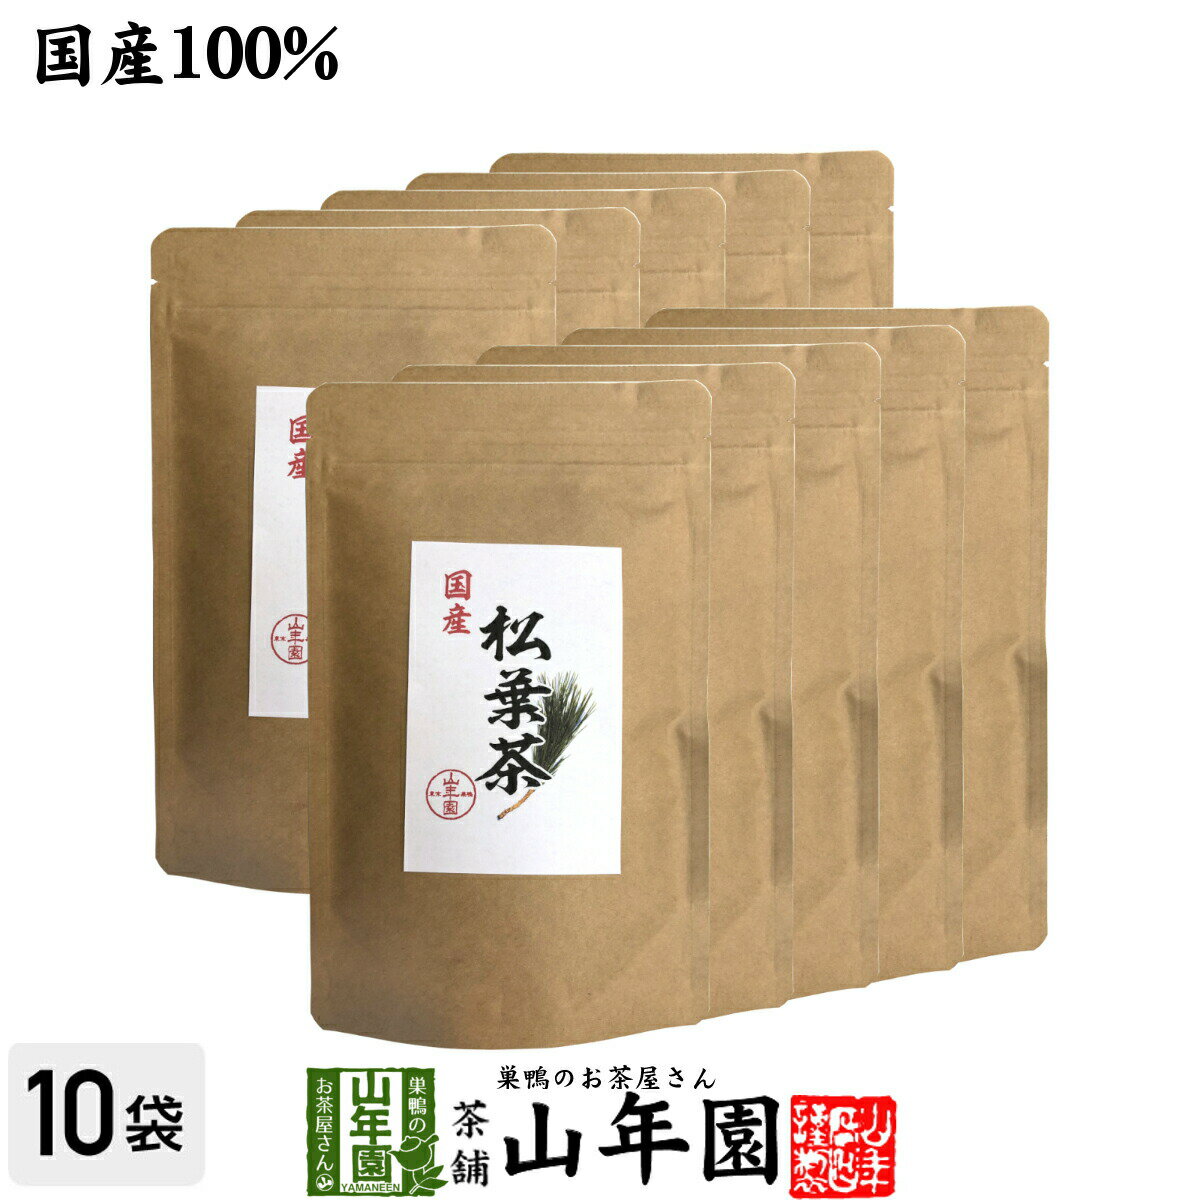 【国産100%】徳島県産 無添加・無農薬 松葉茶 60g×1